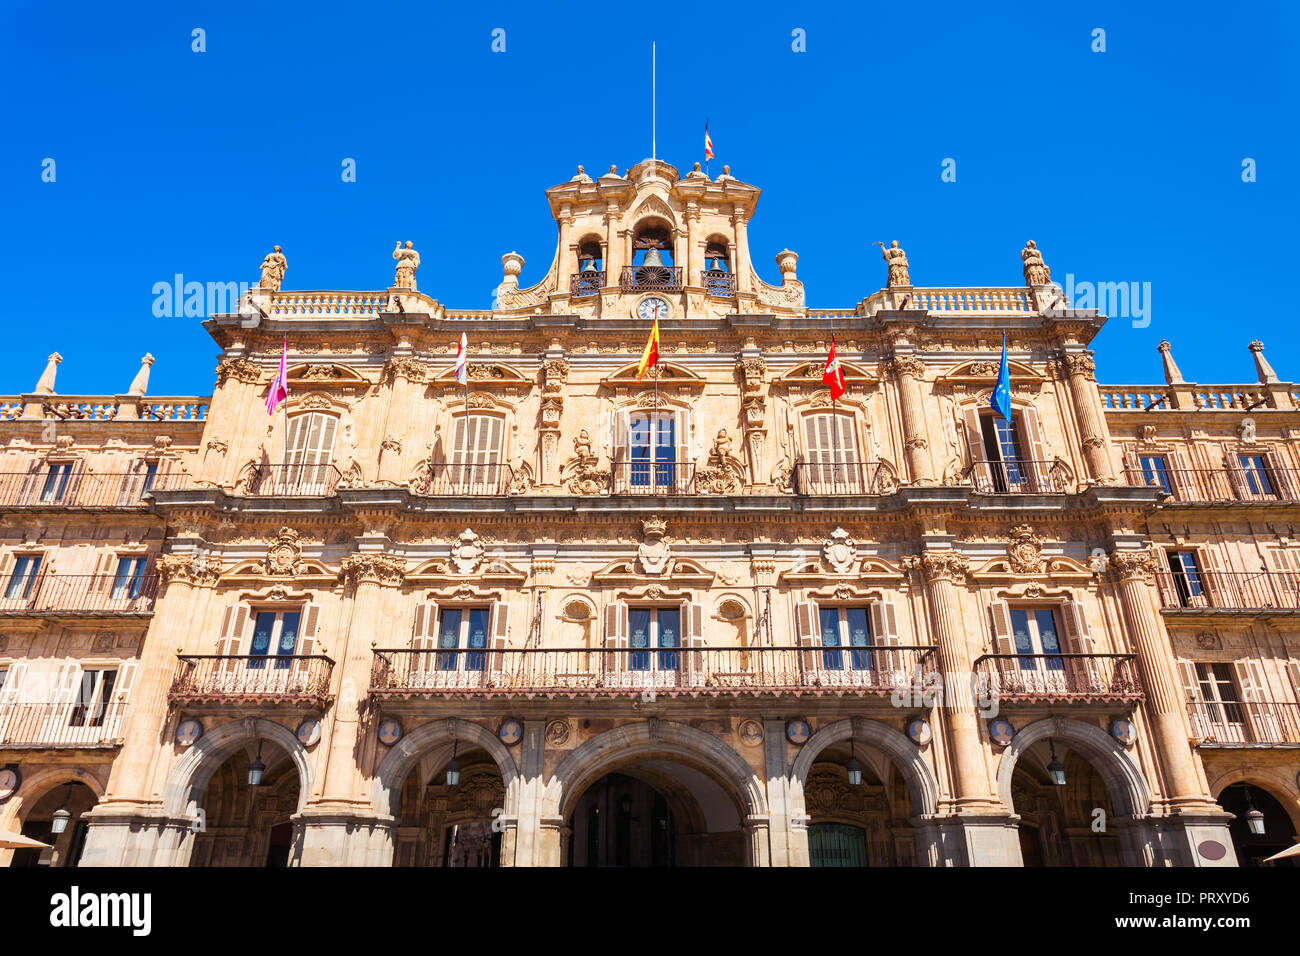 Die Plaza Mayor oder Main Square ist ein großer Platz im Zentrum von Salamanca, verwendet als öffentlicher Platz, Spanien Stockfoto